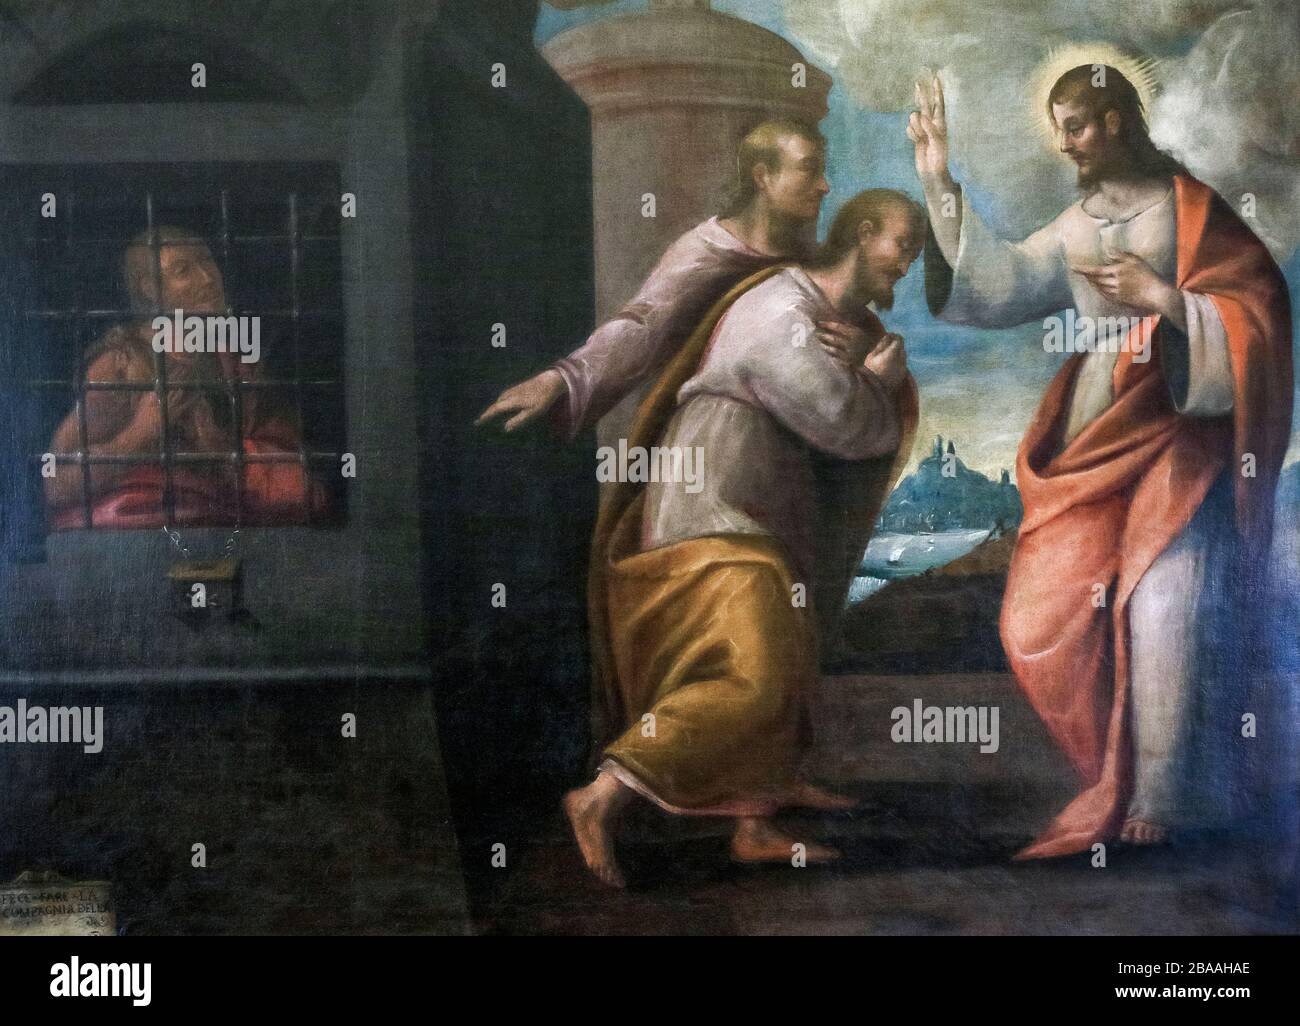 Italia - Emilia Romagna - Ravenna - Museo Nazionale - Anonimo - i discepoli di San Giovanni Battista riconoscono Cristo. xvii secolo Foto Stock